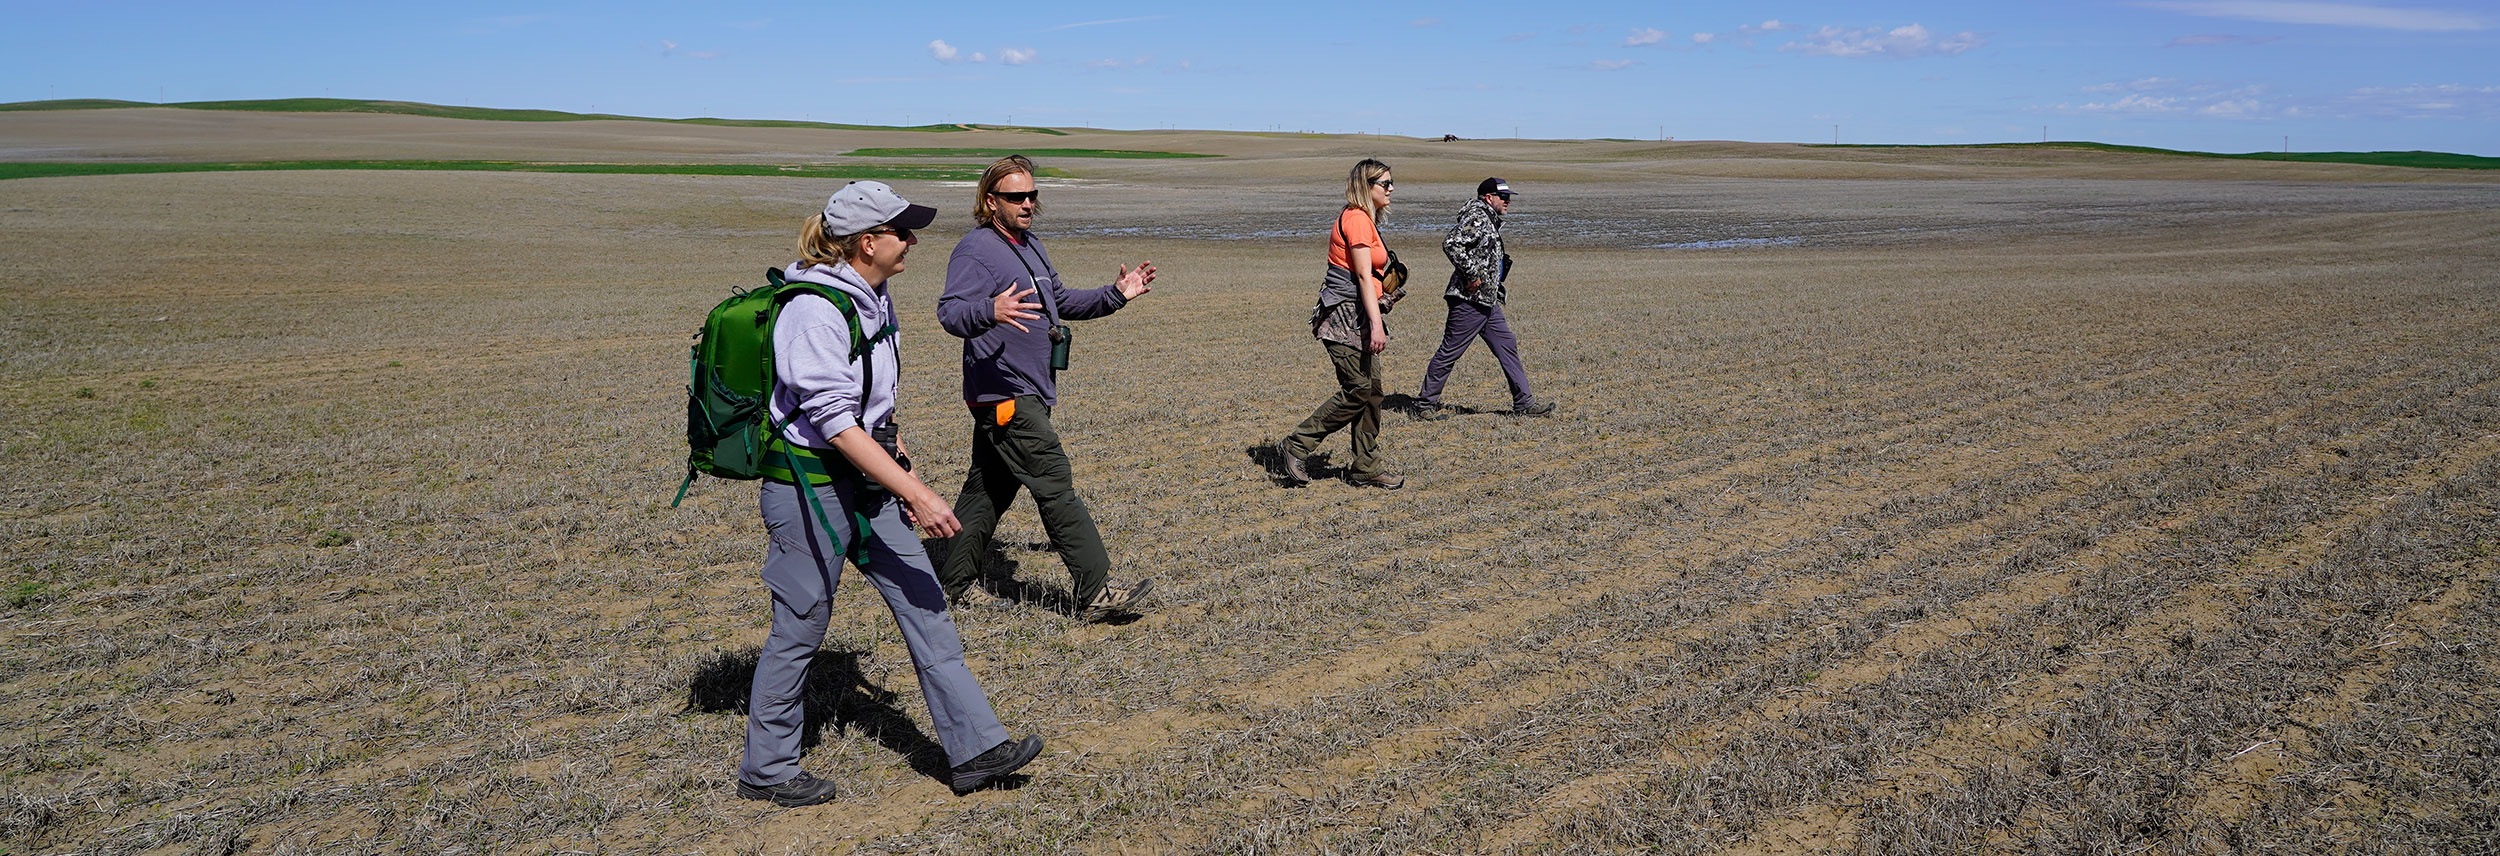 Researchers walking in a field